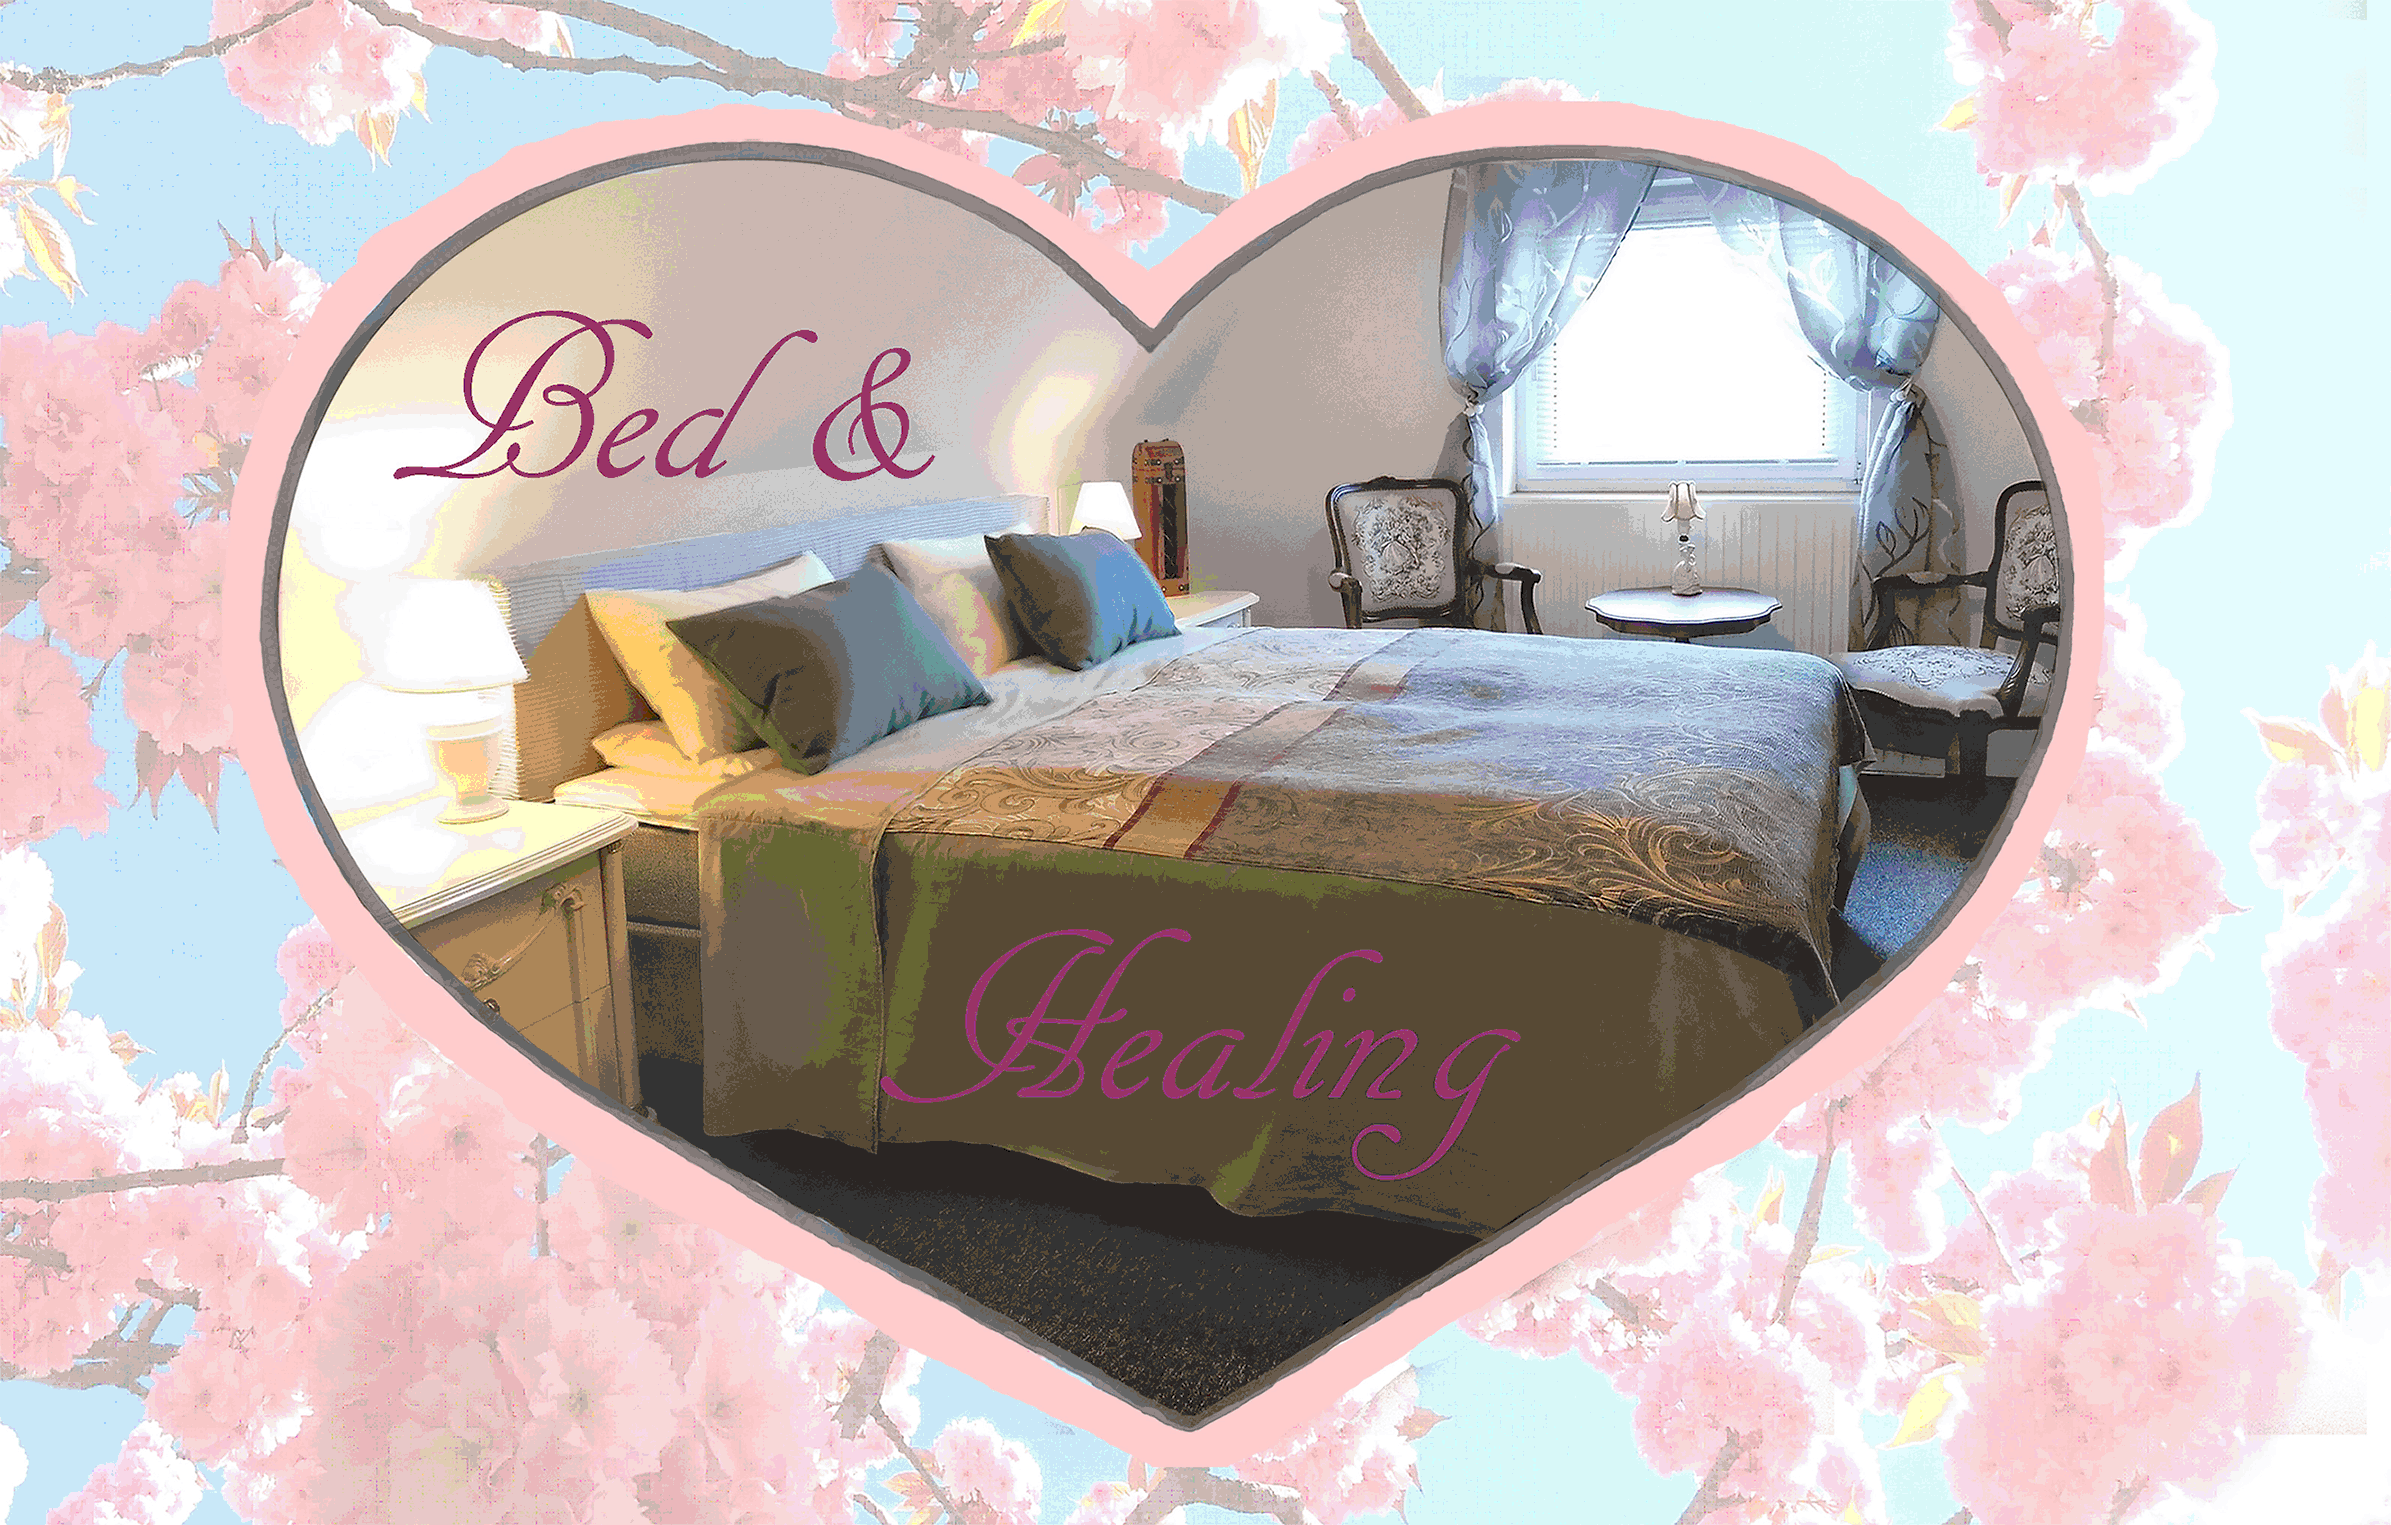 Bed & Healing